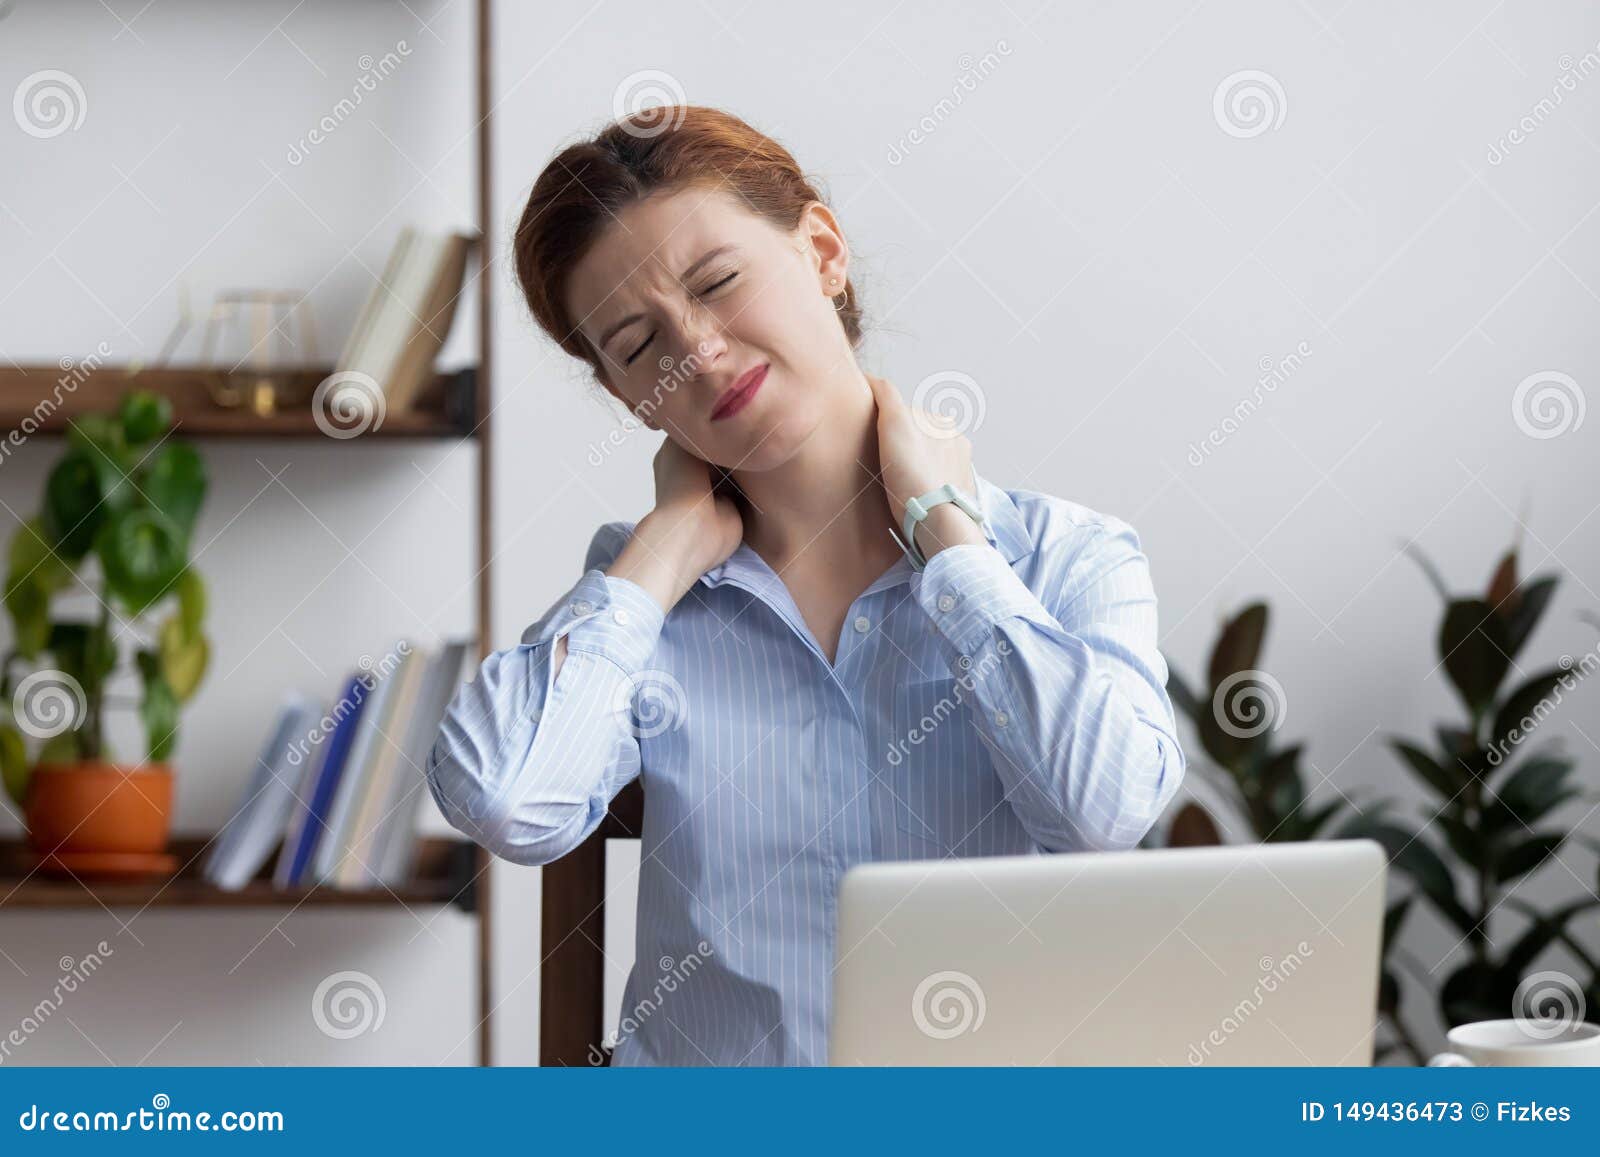 Уставшая шея. Постоянный стресс. Человек с уставшей шеей. Человек за компьютером с болями в шее. Болит шея офис.